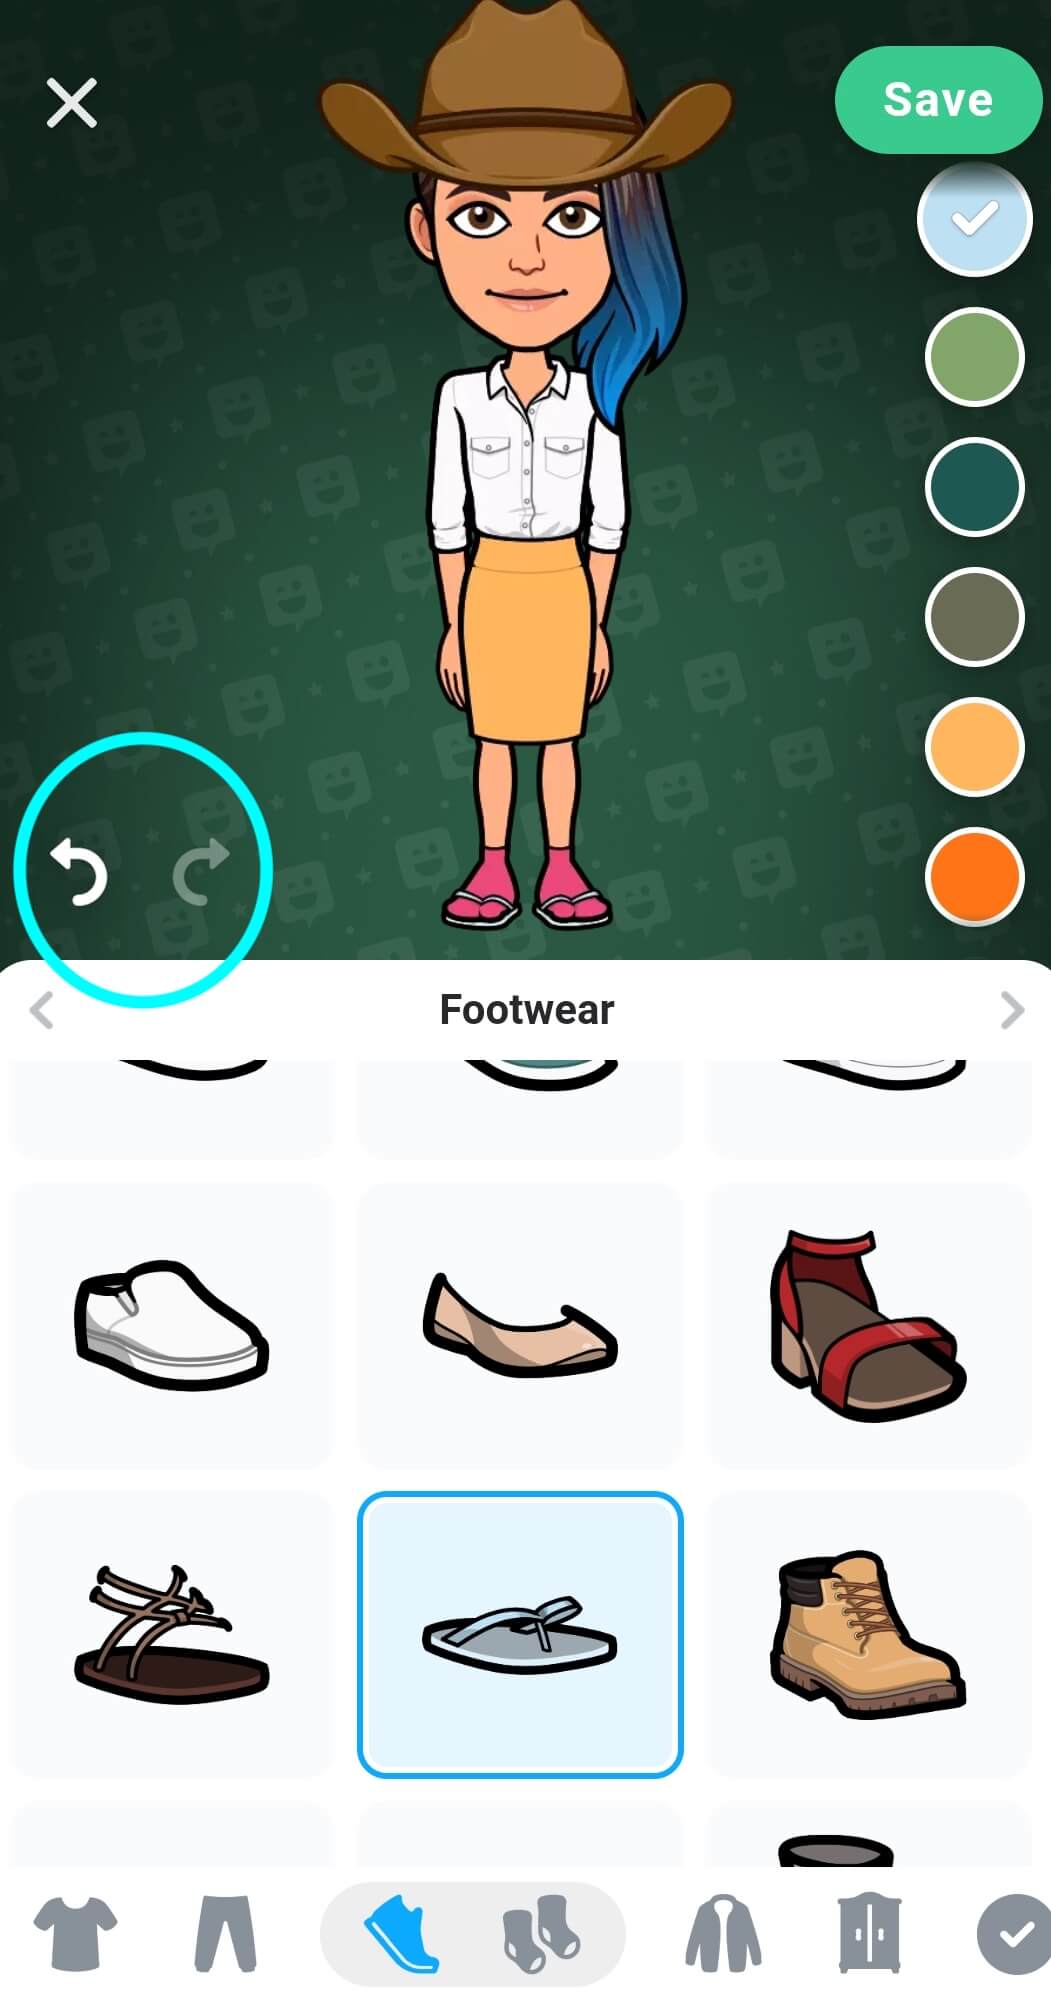 Les boutons Annuler et Rétablir sont mis en évidence et se situent au centre gauche de l'écran de l'Outil de création d'avatar